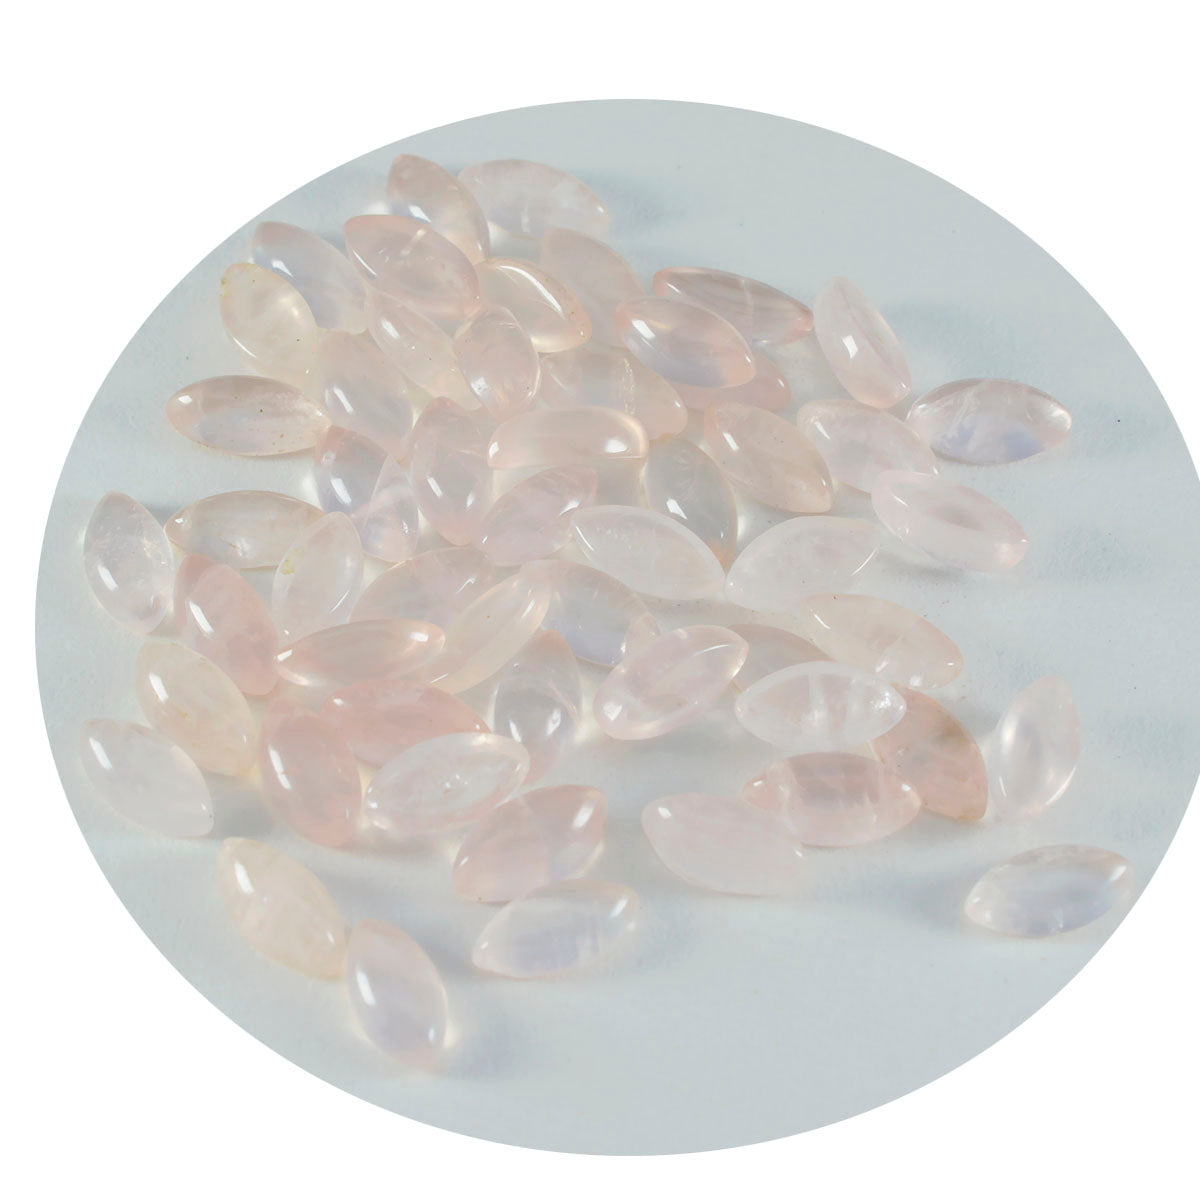 riyogems 1 шт. кабошон из розового кварца 5x10 мм в форме маркизы, красивый качественный драгоценный камень